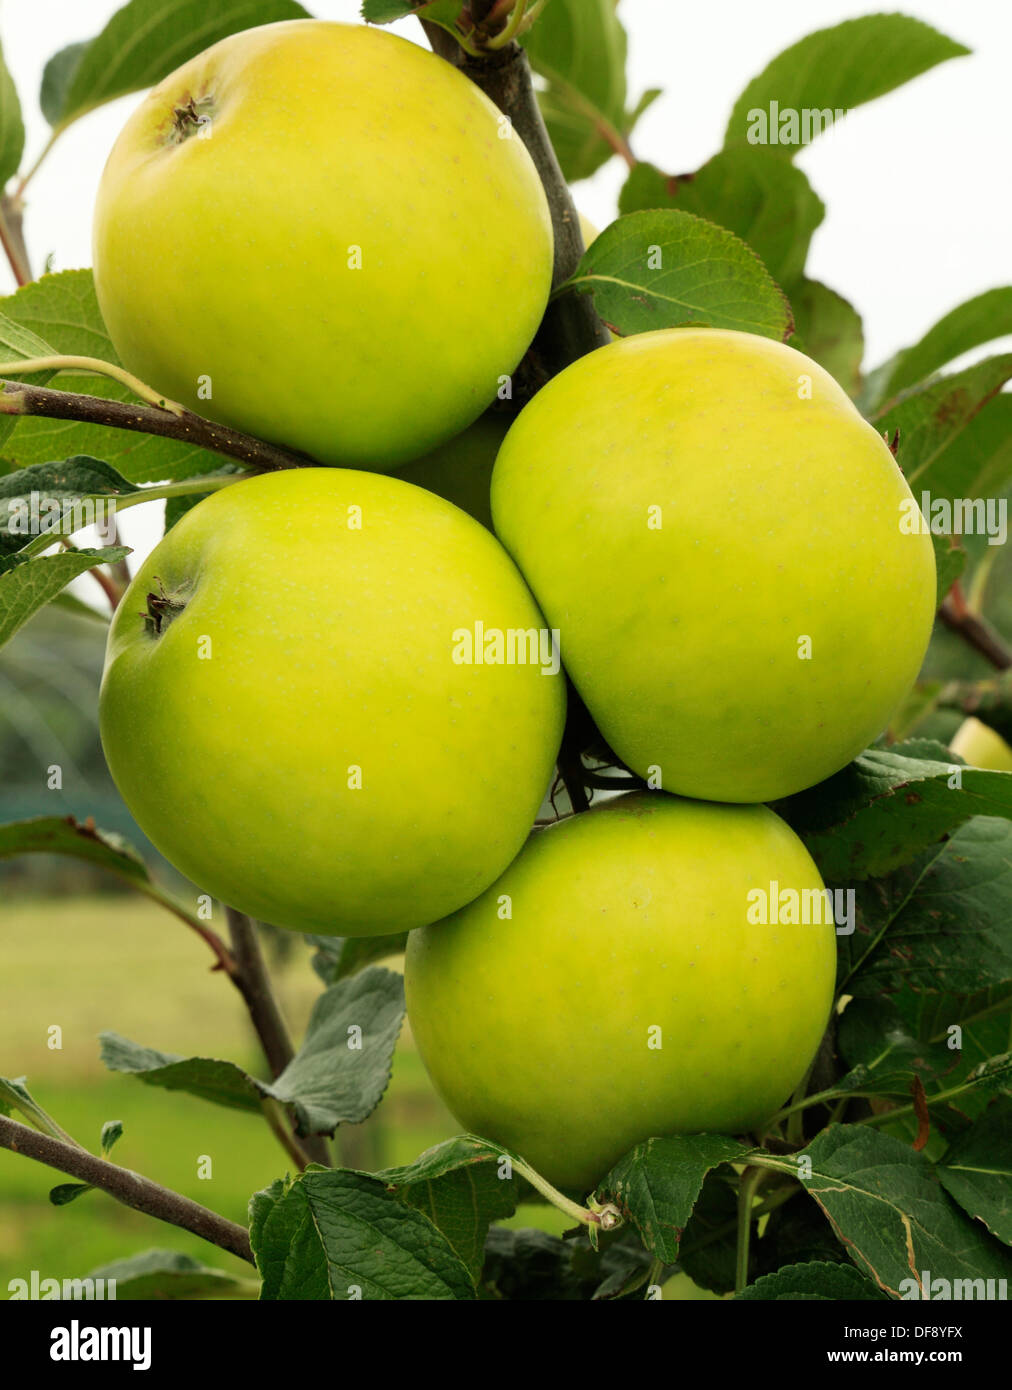 Apple "Goldene edel", kulinarische, kochende Sorte wächst am Baum, Frucht, grüne Äpfel England UK Stockfoto